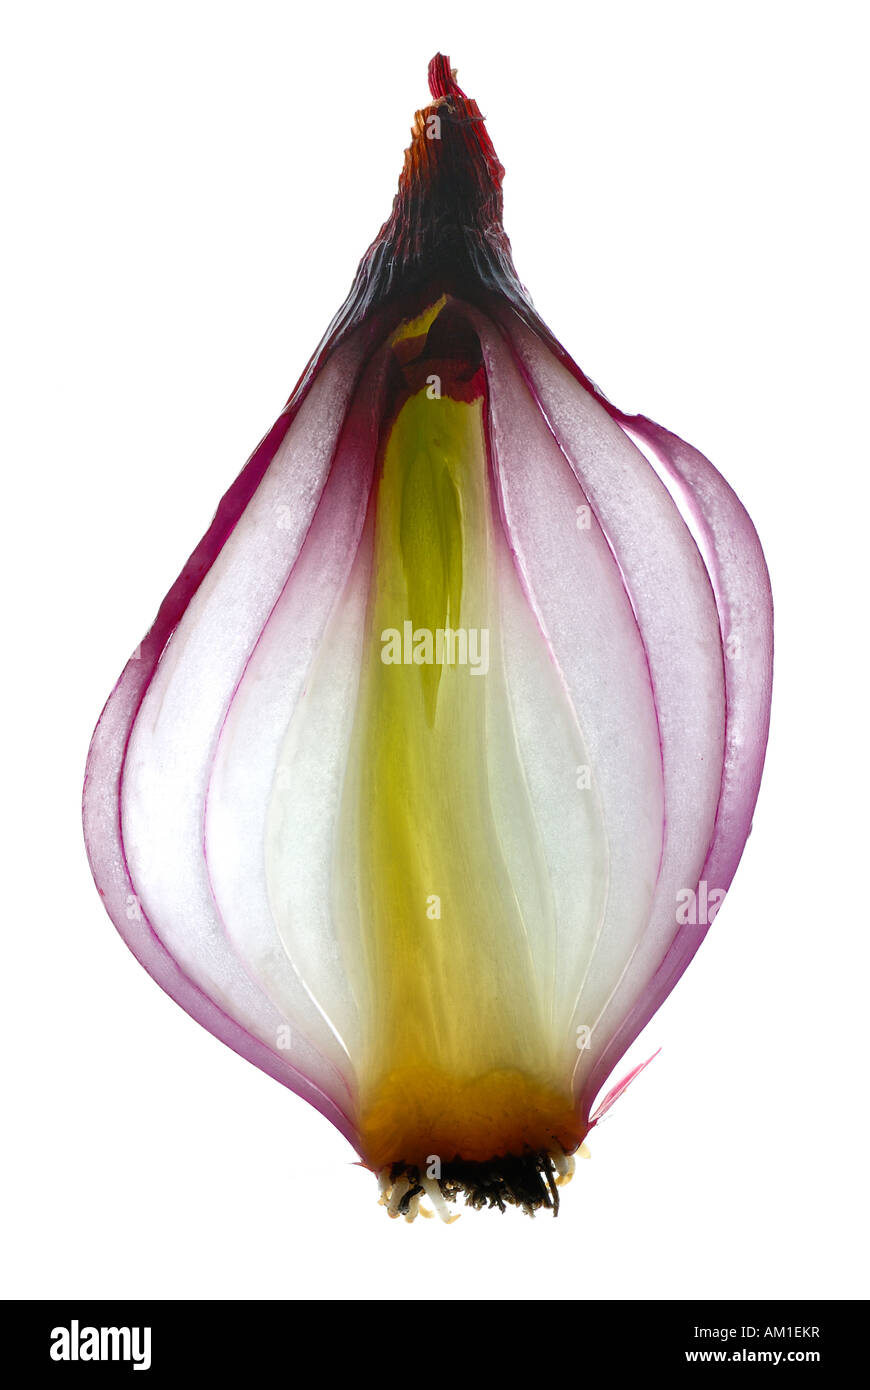 La section transversale d'un oignon rouge (Allium cepa) Banque D'Images